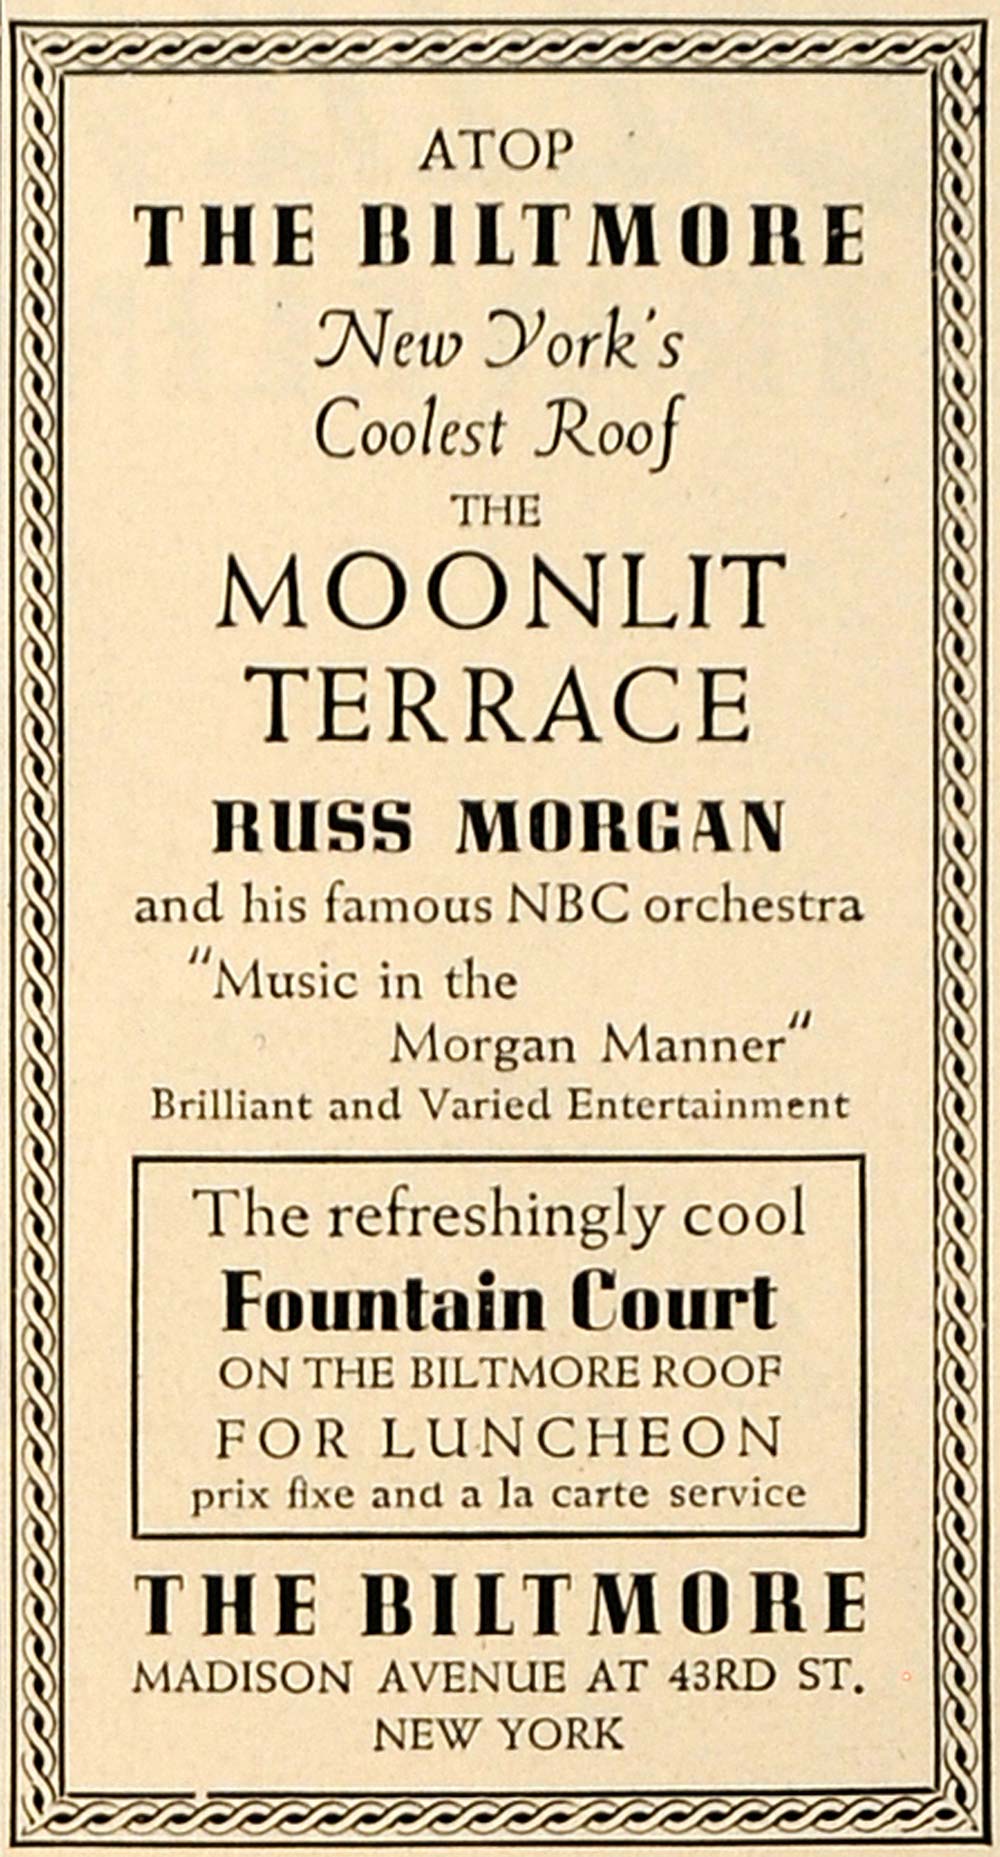 1936 Ad Biltmore Moonlit Terrace Russ Morgan Orchestra - ORIGINAL ESQ1